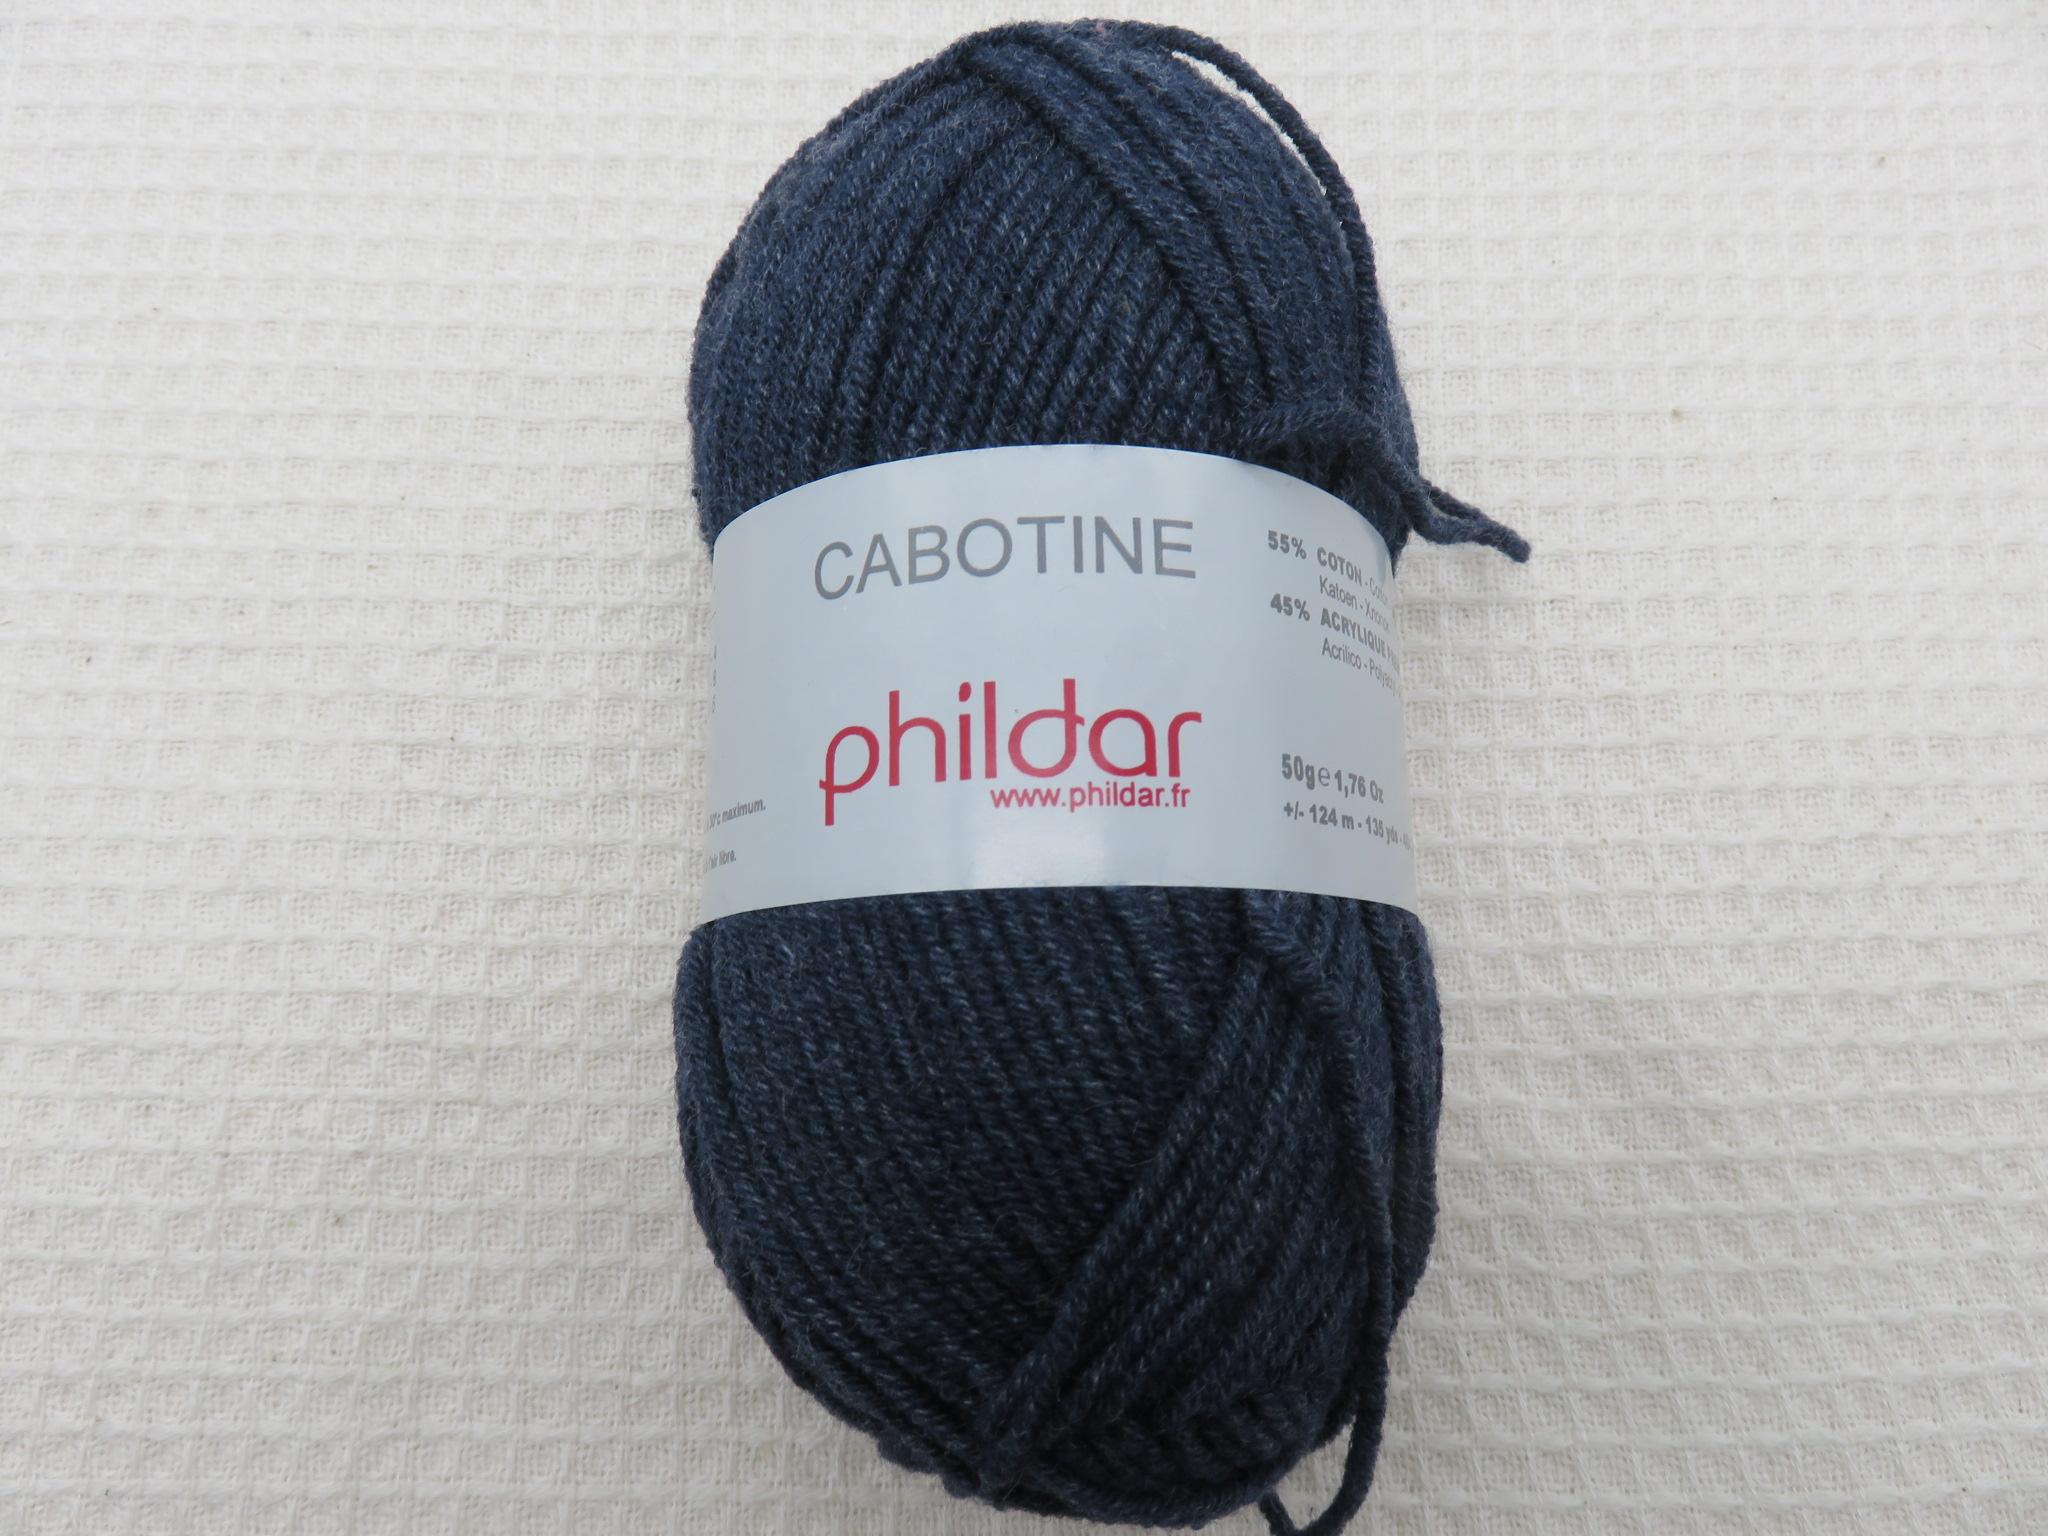 Pelote Cabotine indigo Phildar coton acrylique - bain 142